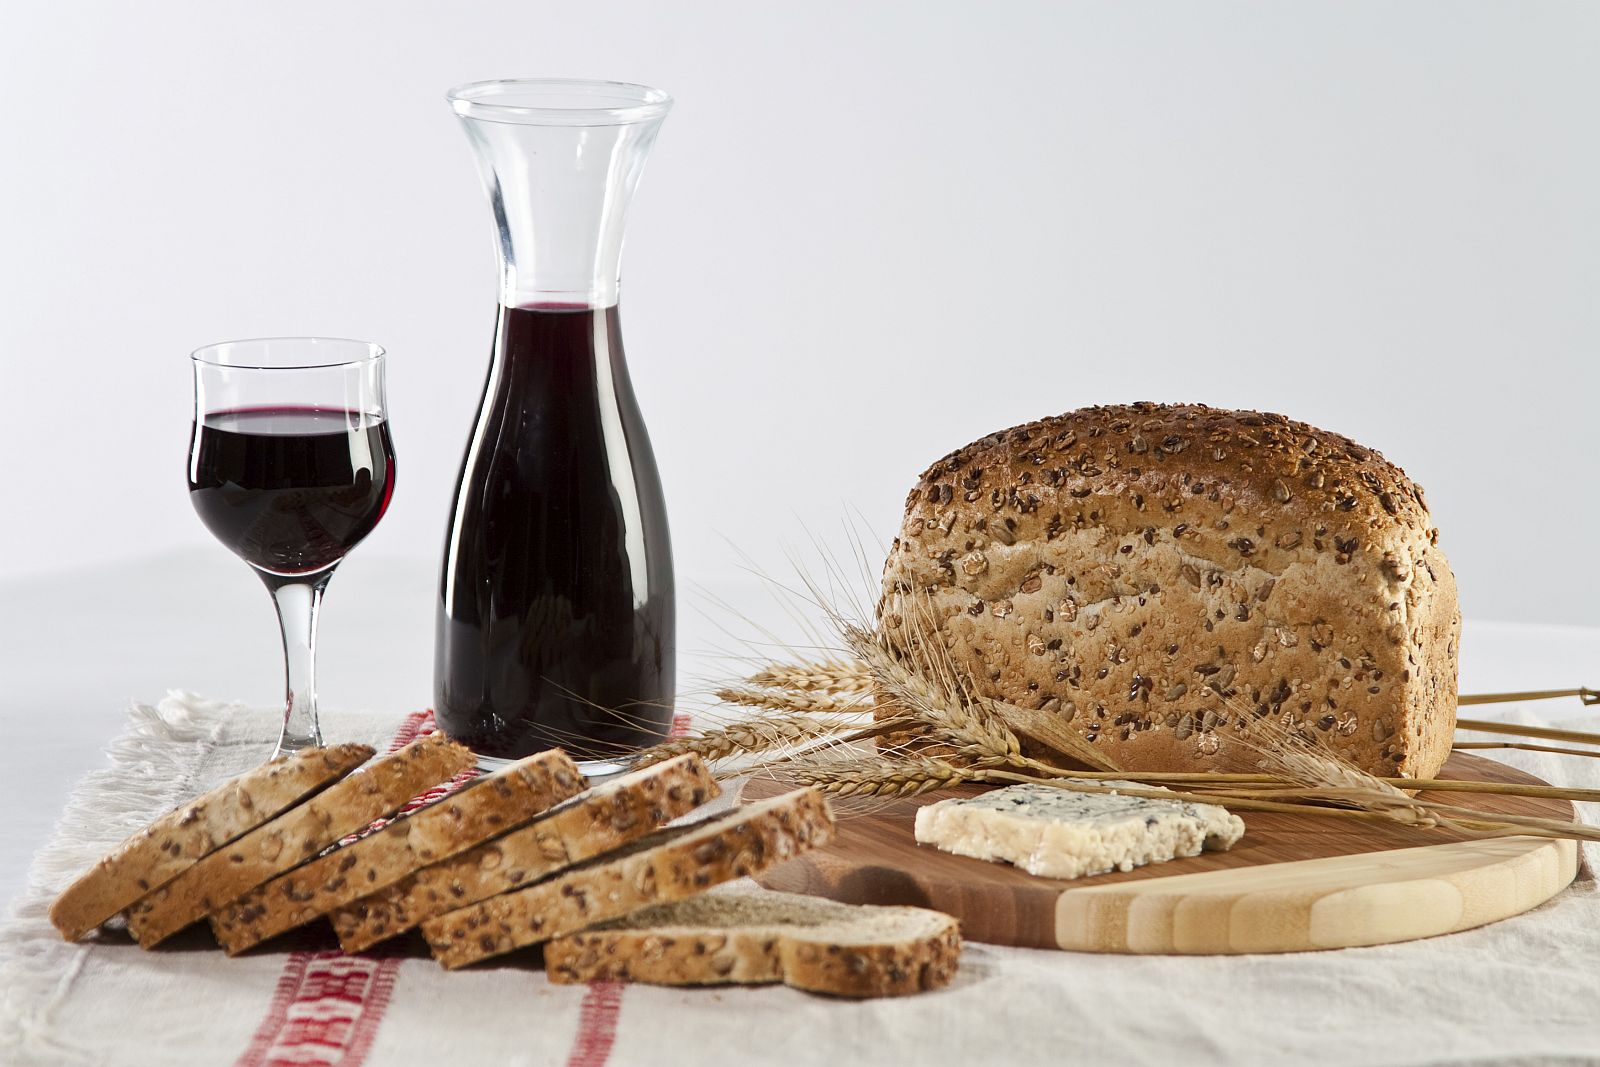 El vino tinto y las semillas contienen polifenoles, que se creen beneficiosos para prevenir riesgos para la salud.